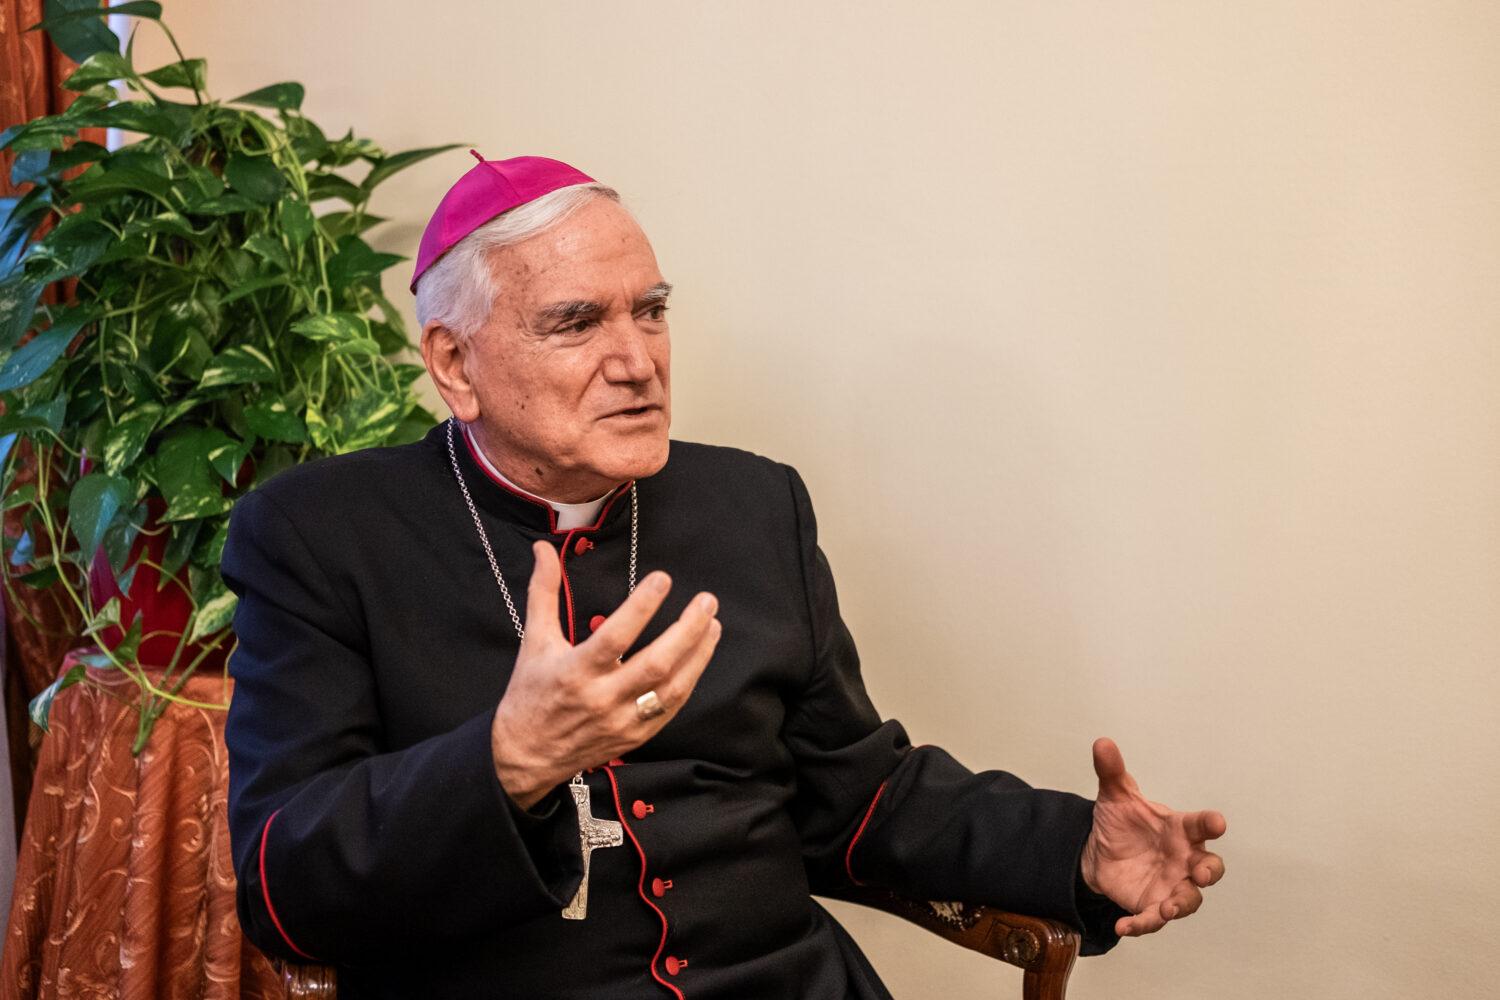 Apoštolský nuncius Nicola Girasoli: Modliť sa je dôležité, niekedy to však nestačí. Sú tu aj skutočné problémy ľudí